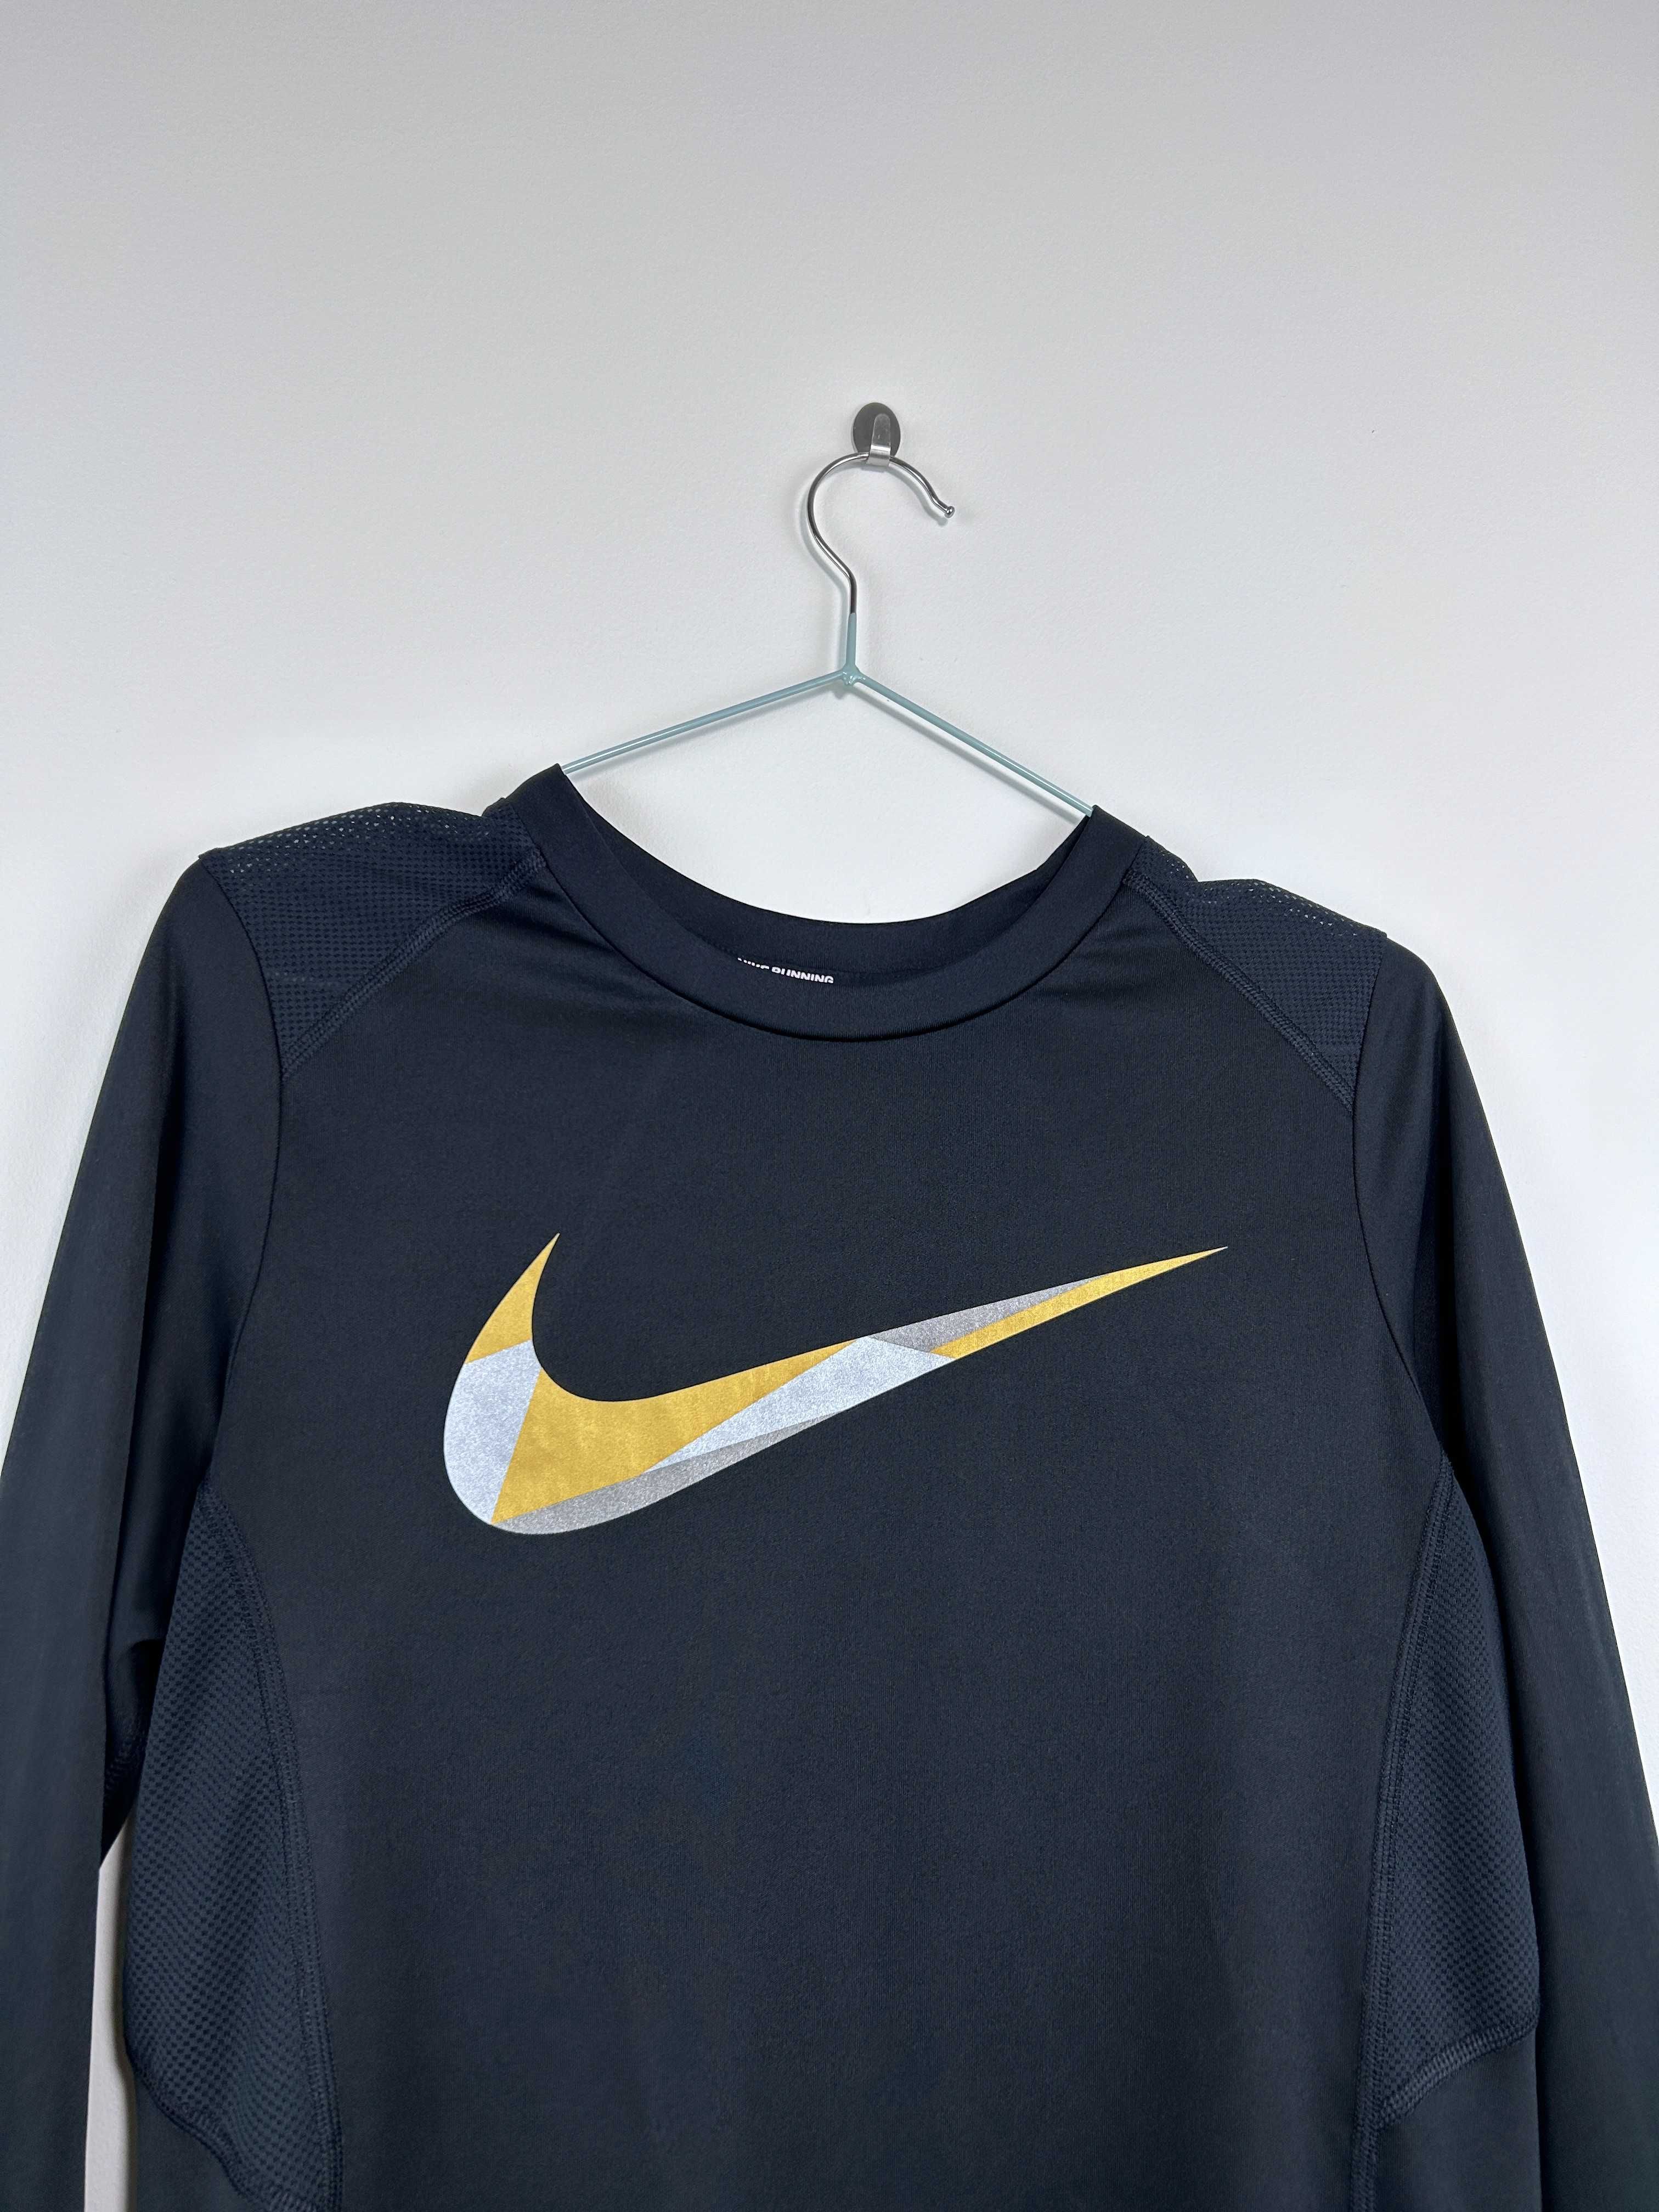 Bluza sportowa Nike damska